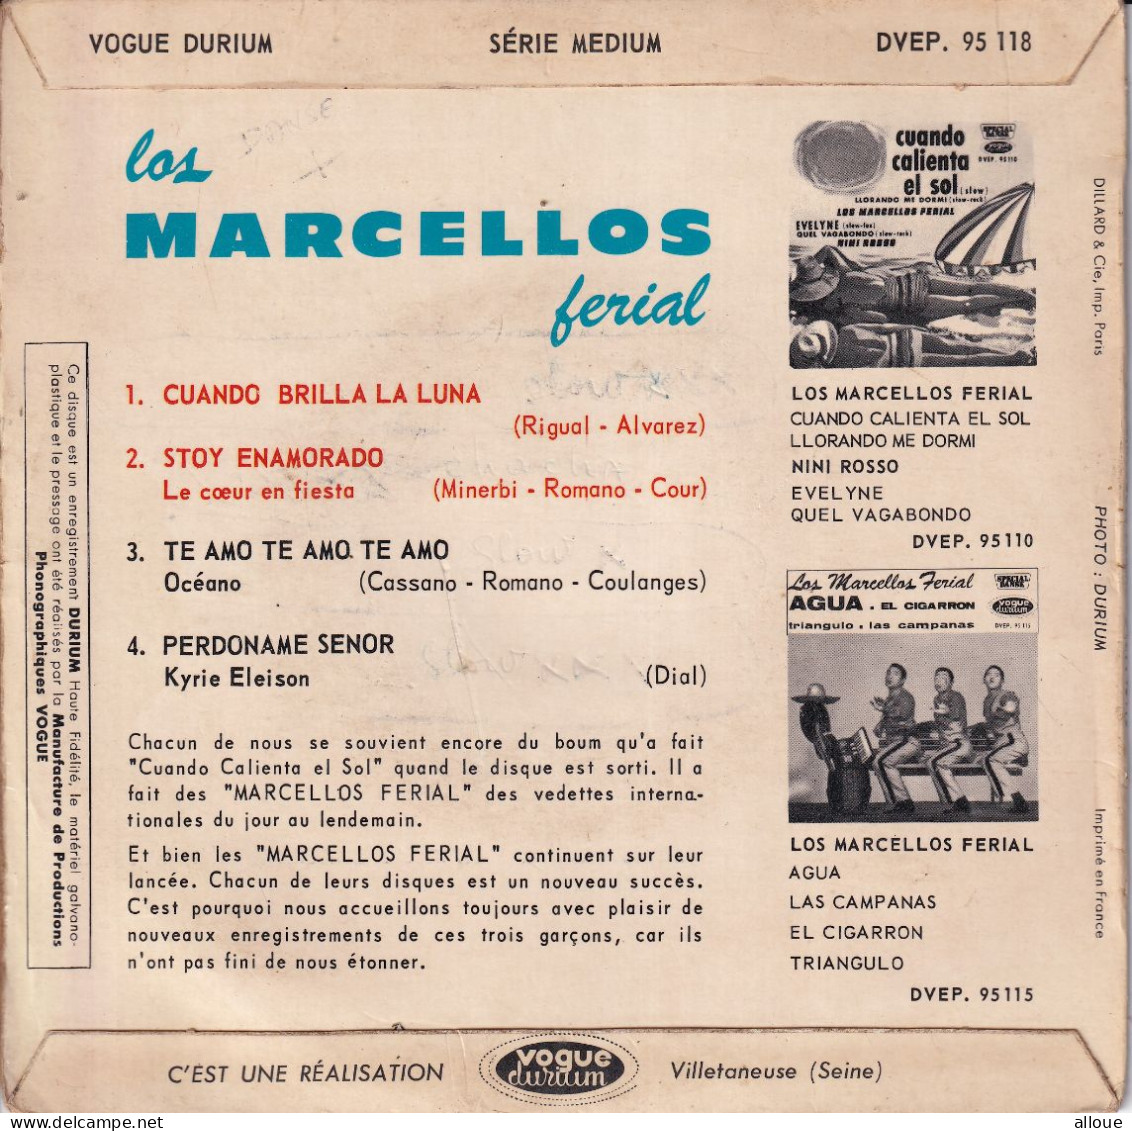 LOS MARCELLOS FERIAL - FR EP - CUANDO BRILLA LA LUNA + 3 - World Music